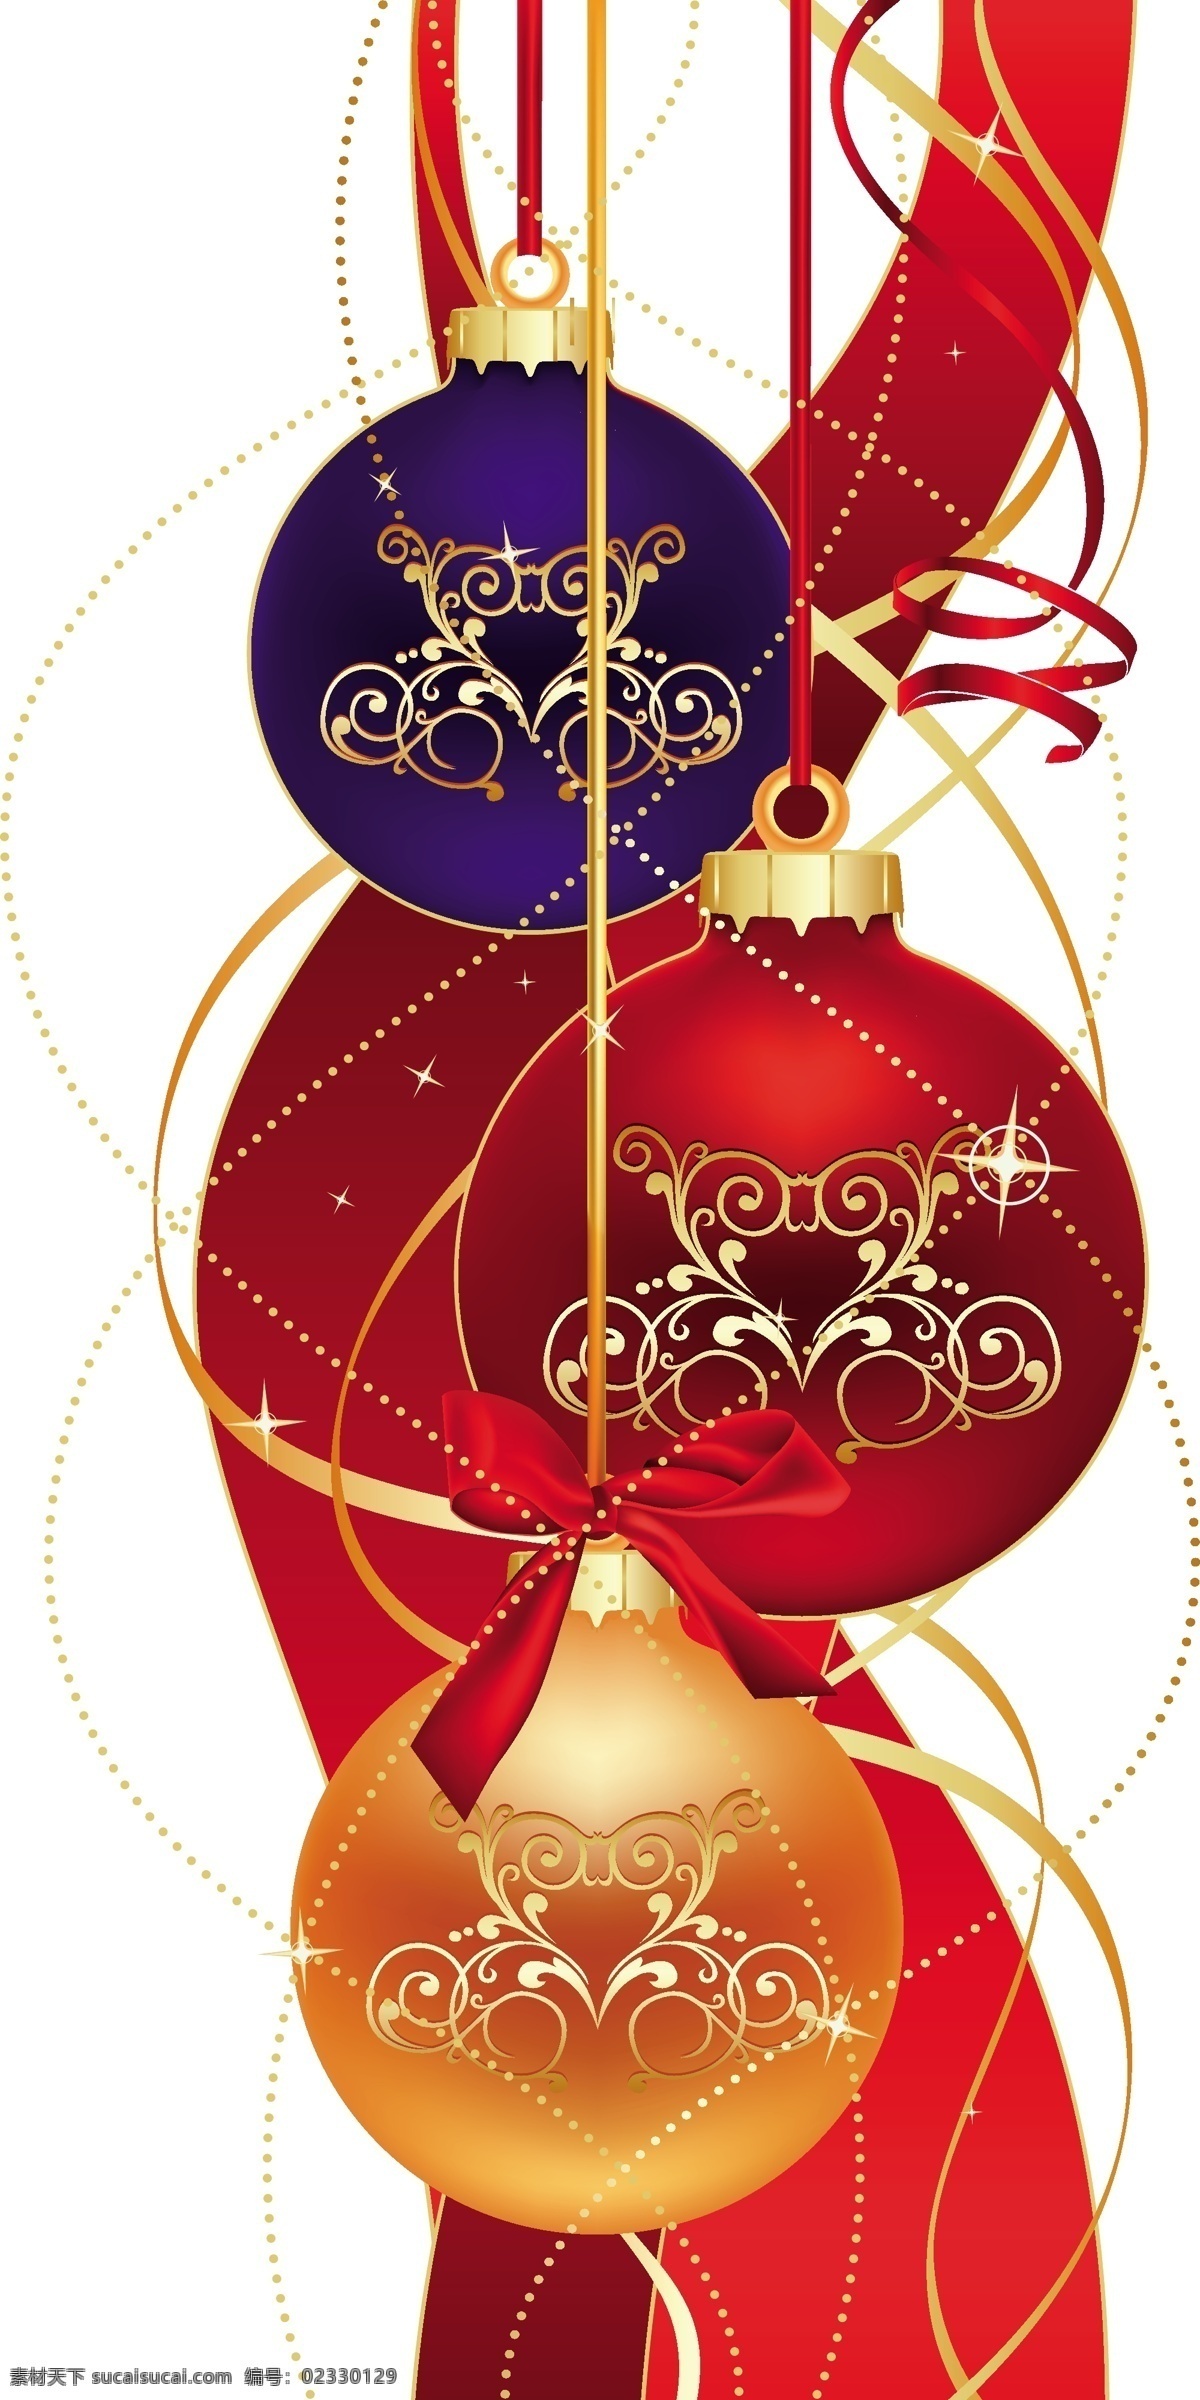 christmas merry 红色圣诞 精美 圣诞 背景 元素 精品 圣诞雪景 圣诞彩色挂球 金属挂球 蓝色 可爱 雪花 圣诞节 装饰 节日素材